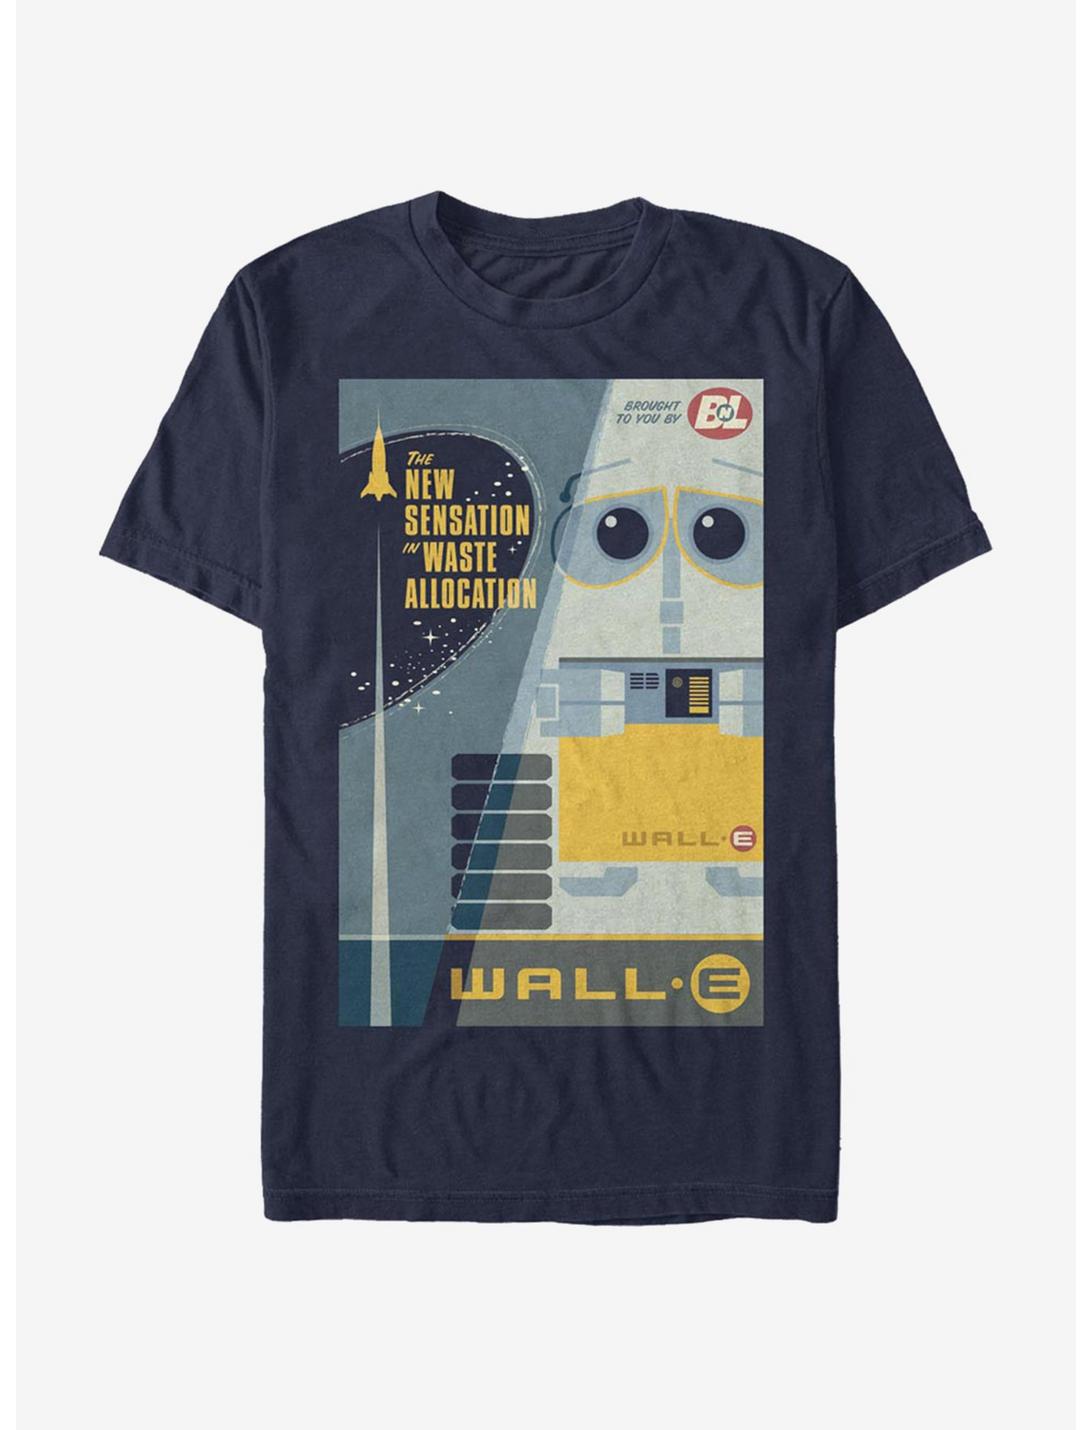 Disney Pixar Wall-E New Sensation Poster T-Shirt, NAVY, hi-res